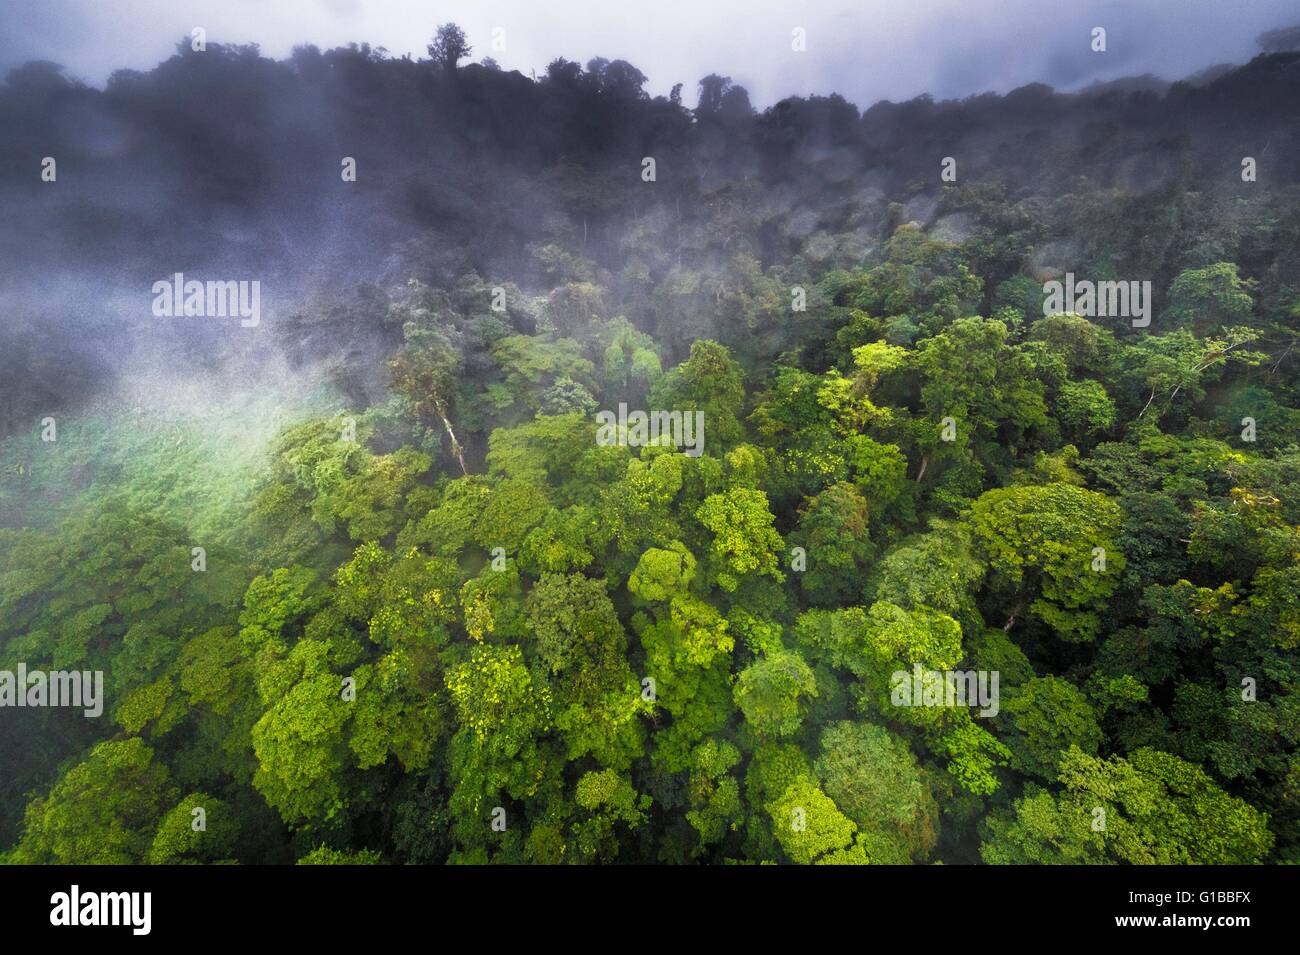 France, Guyane, Guyane Française Parc Amazonien, secteur de coeur, le sommet de la montagne de Itoupe (830 m), saison des pluies, vue aérienne de la forêt de nuages à partir de l'hélicoptère de transport de l'équipe scientifique Banque D'Images